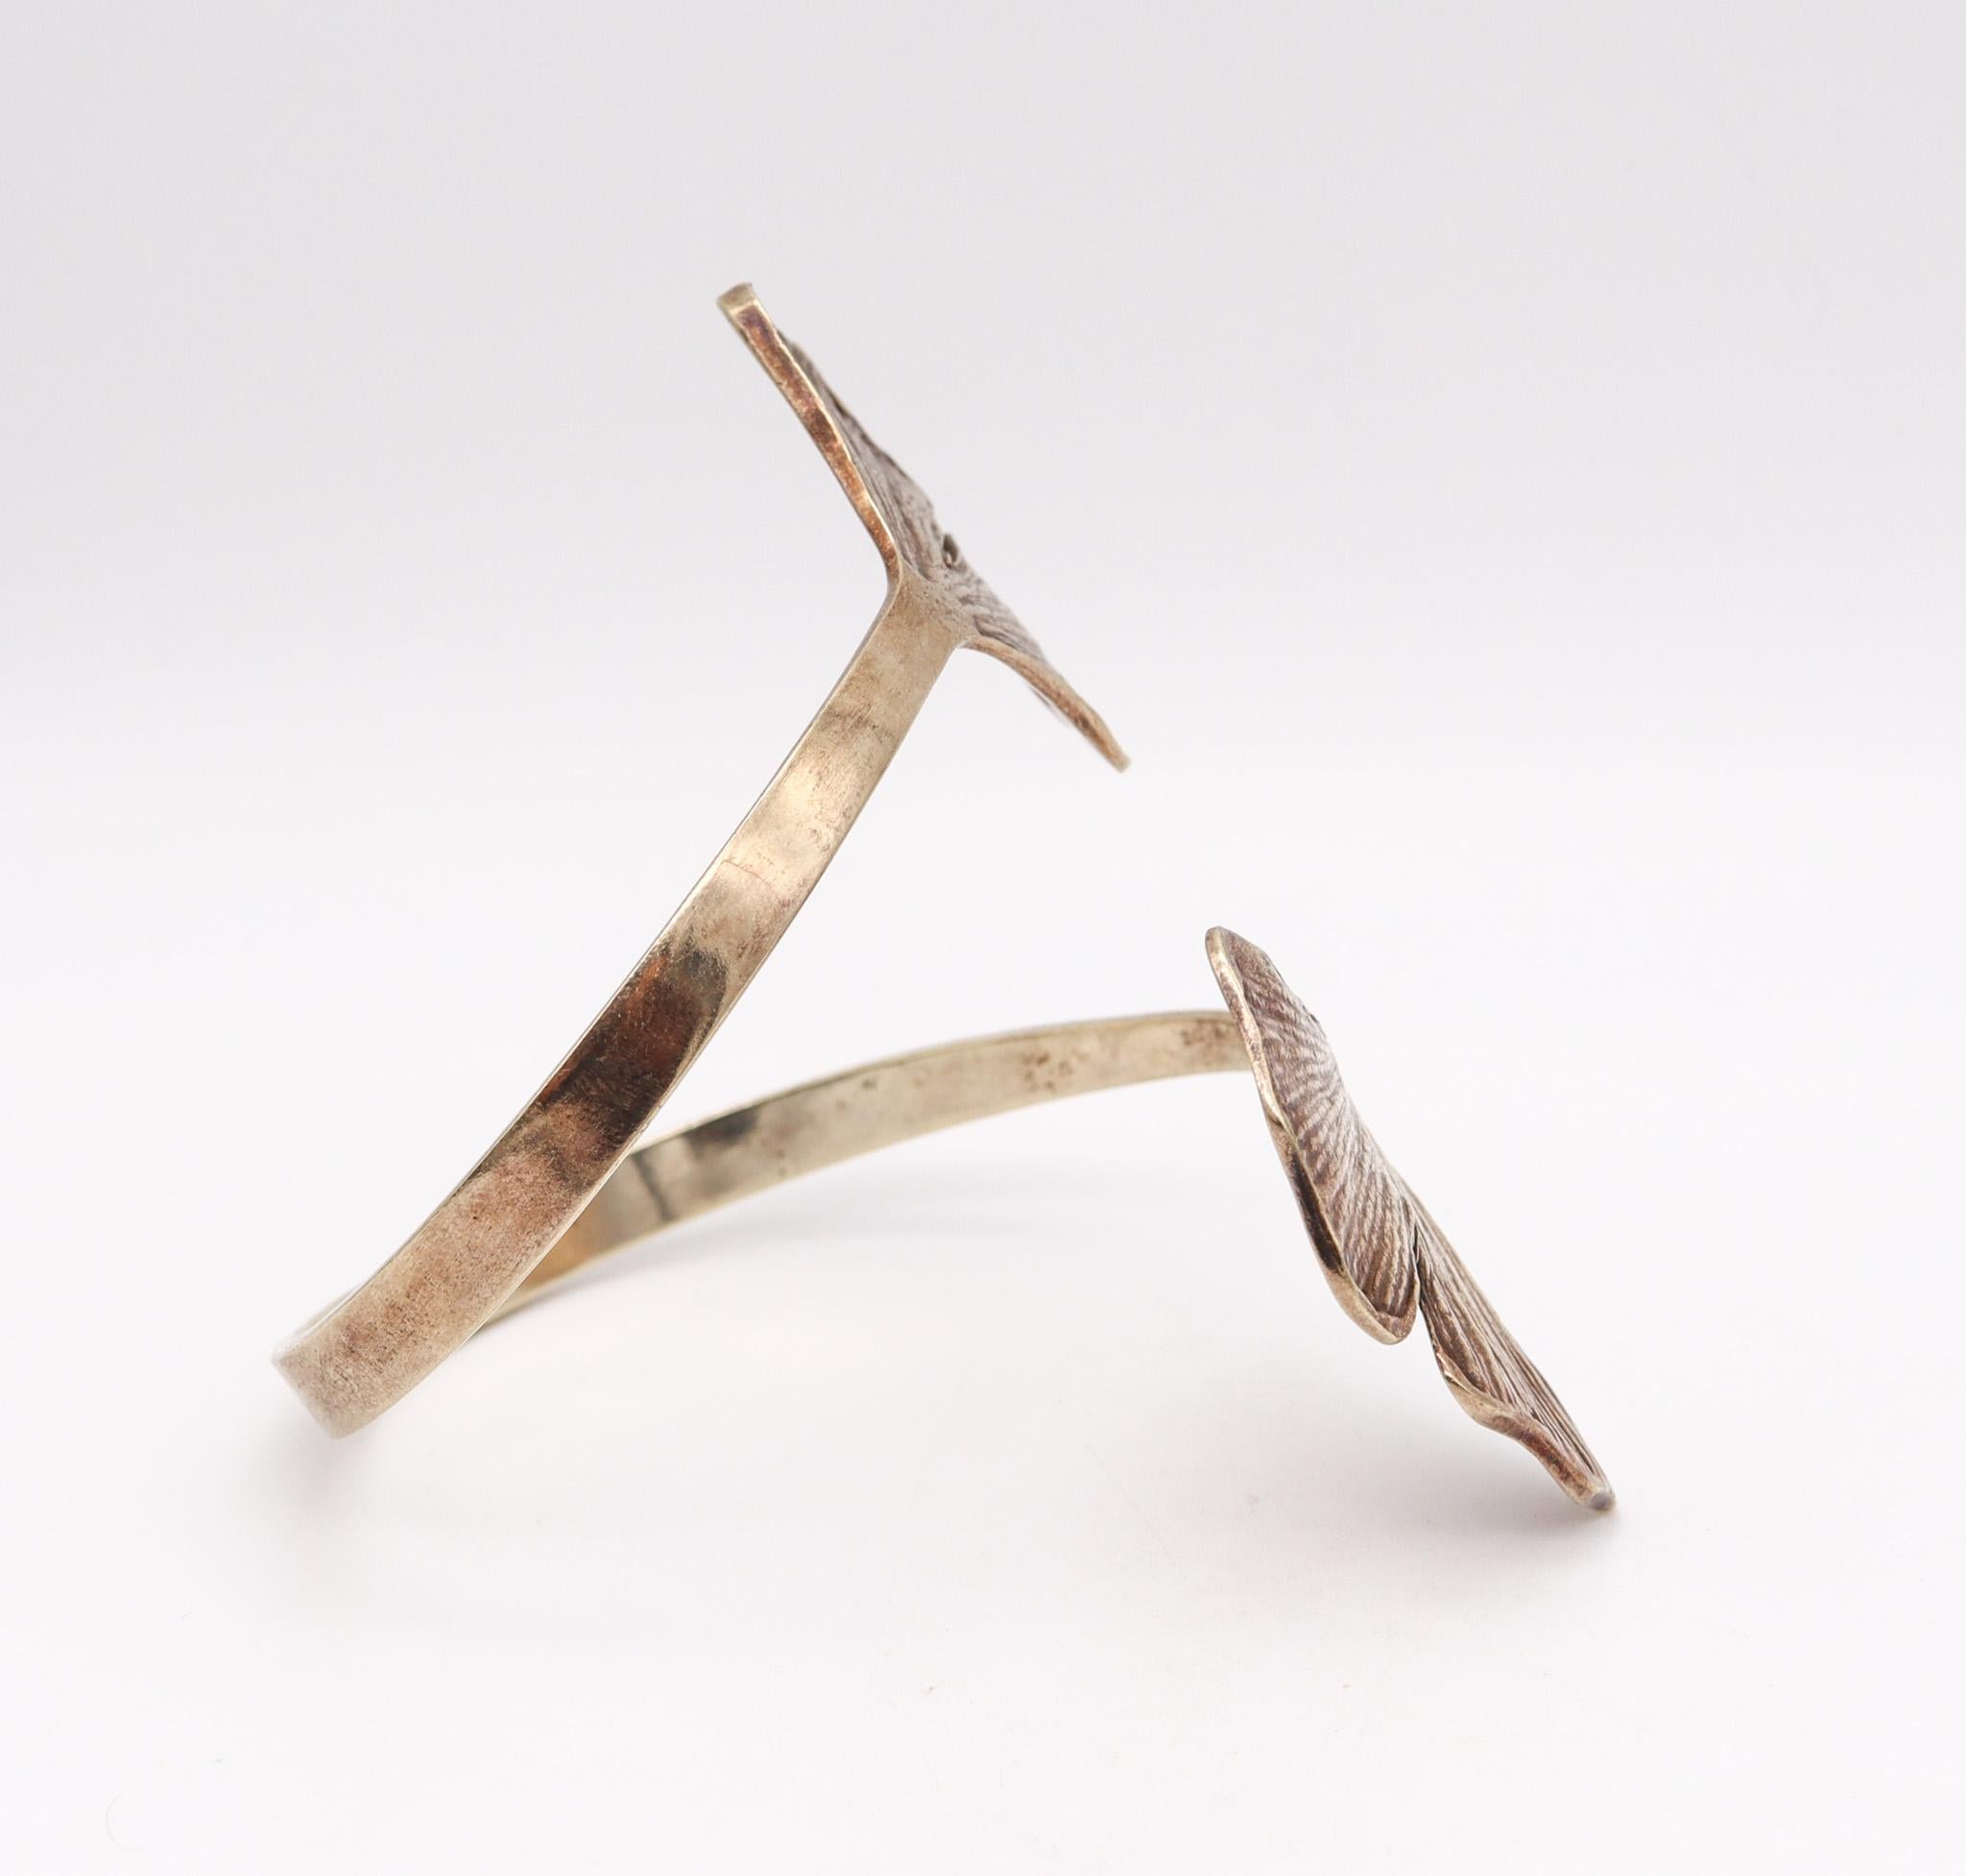 Double manchette en gingko conçue par Paul Oudet (1946-).

Un prototype de bracelet manchette sculptural, créé à Paris en France par le sculpteur Paul Oudet, dans les années 1970. Cette pièce organique a été réalisée comme une pièce unique en argent